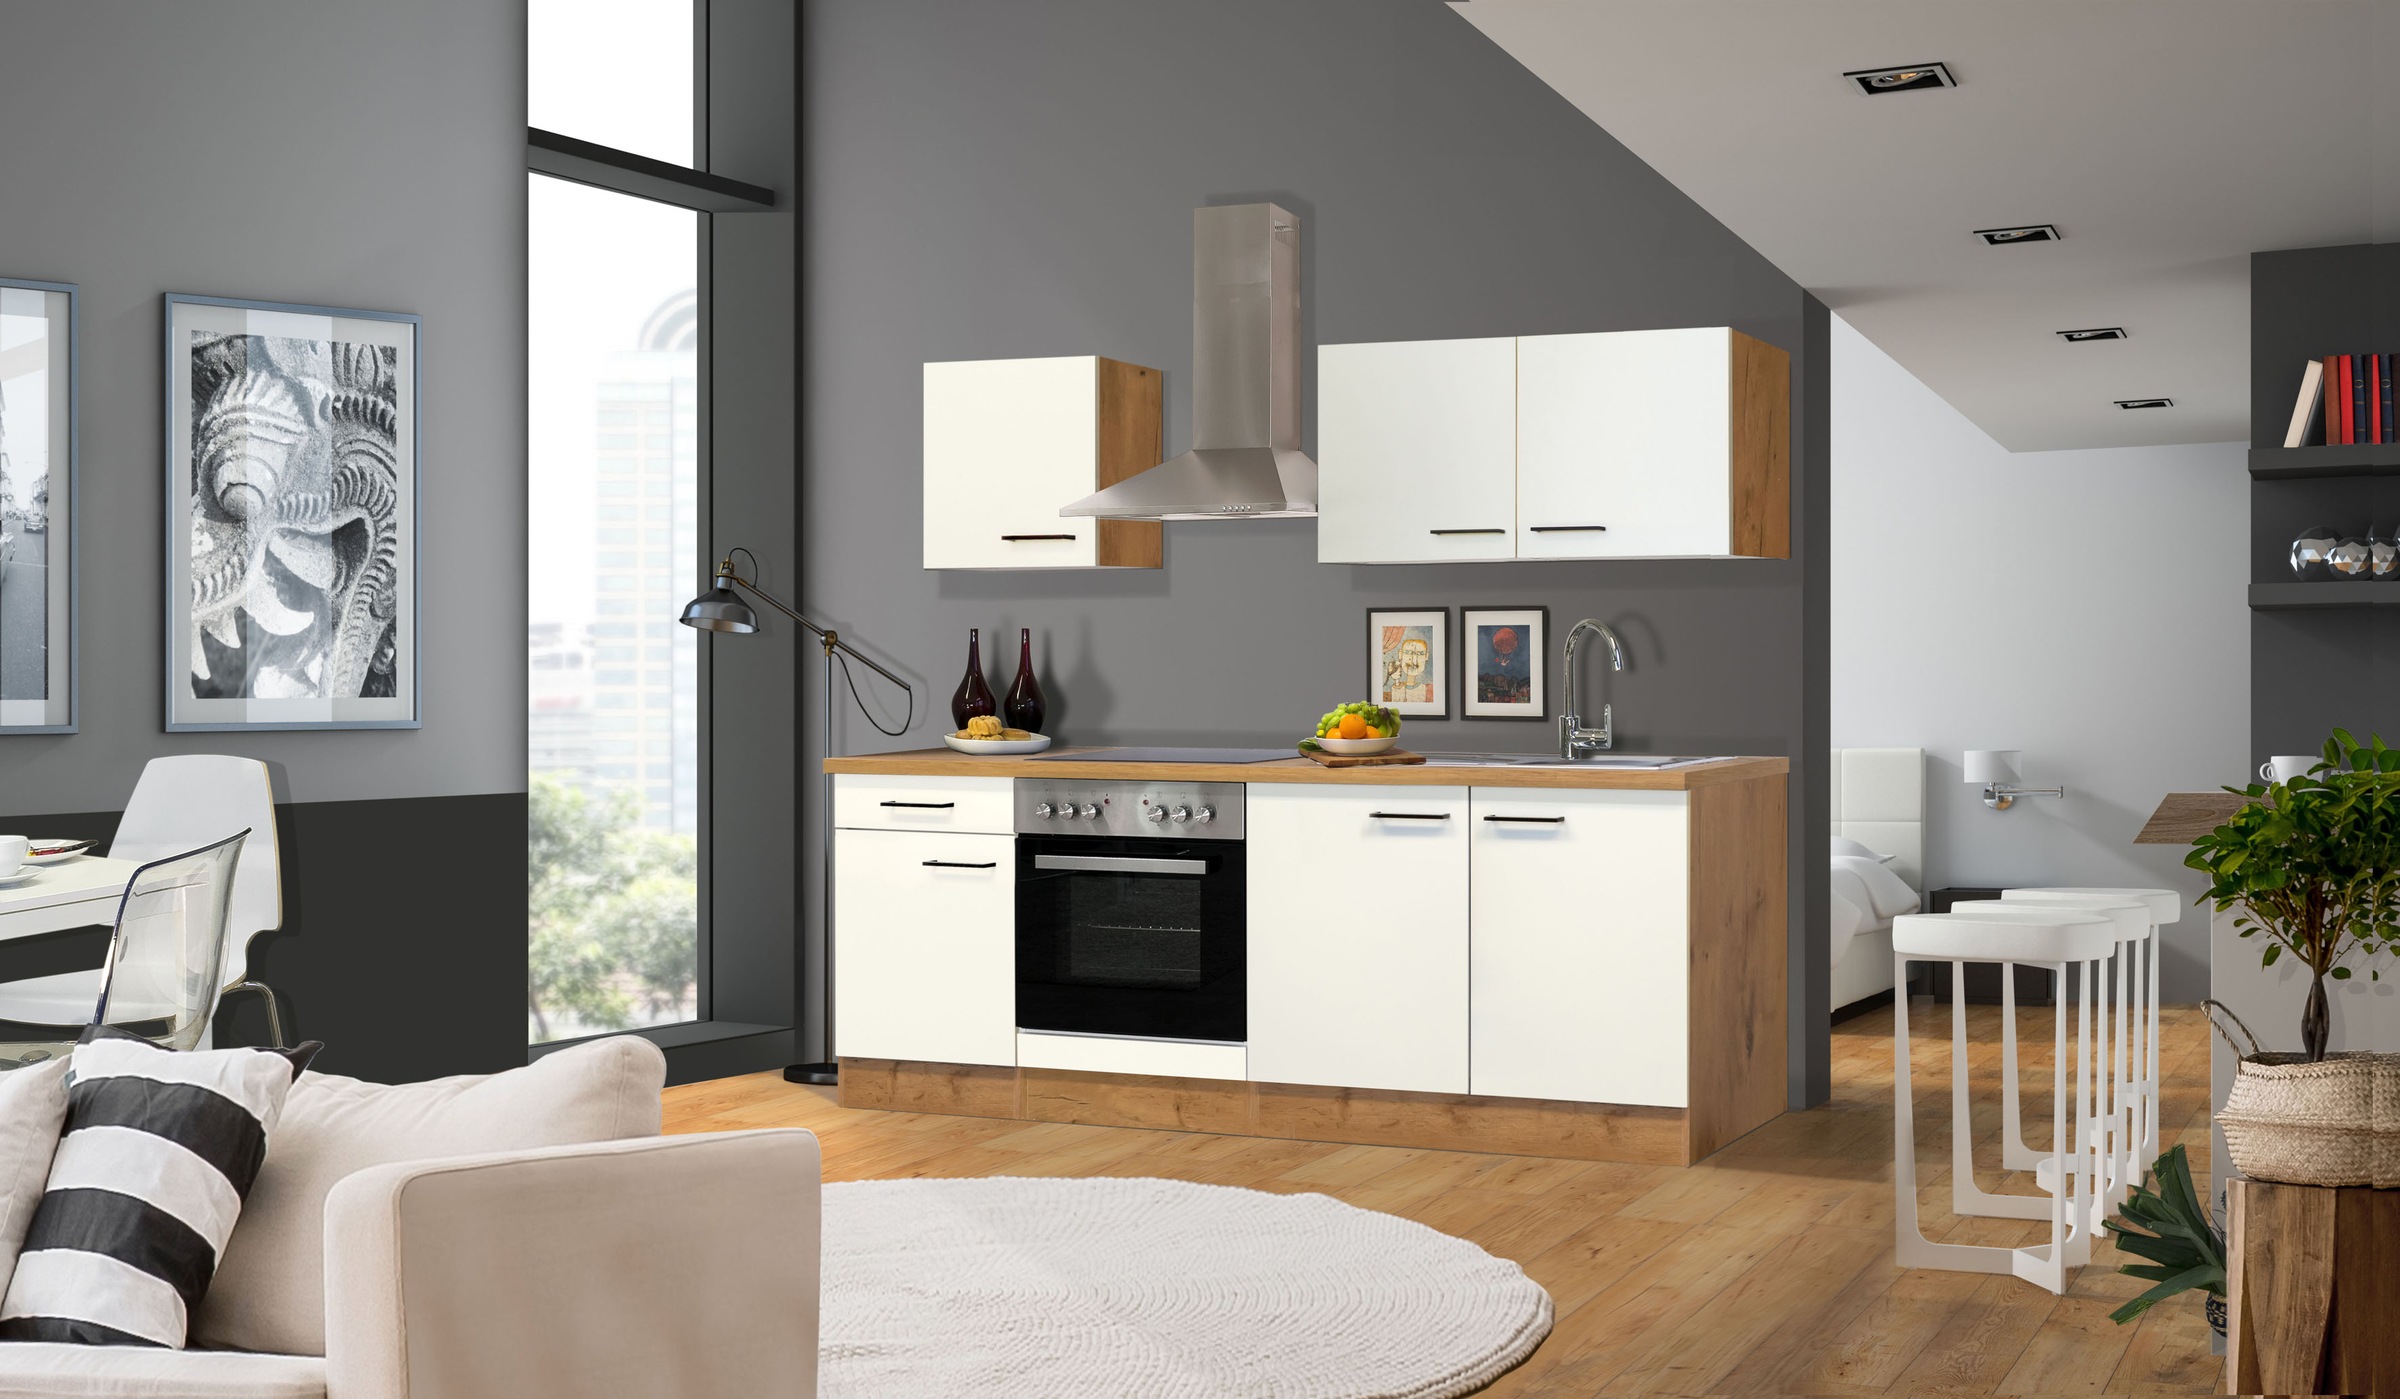 Flex-Well Küche »Vintea«, Gesamtbreite 210 cm, mit und ohne E-Geräte lieferbar